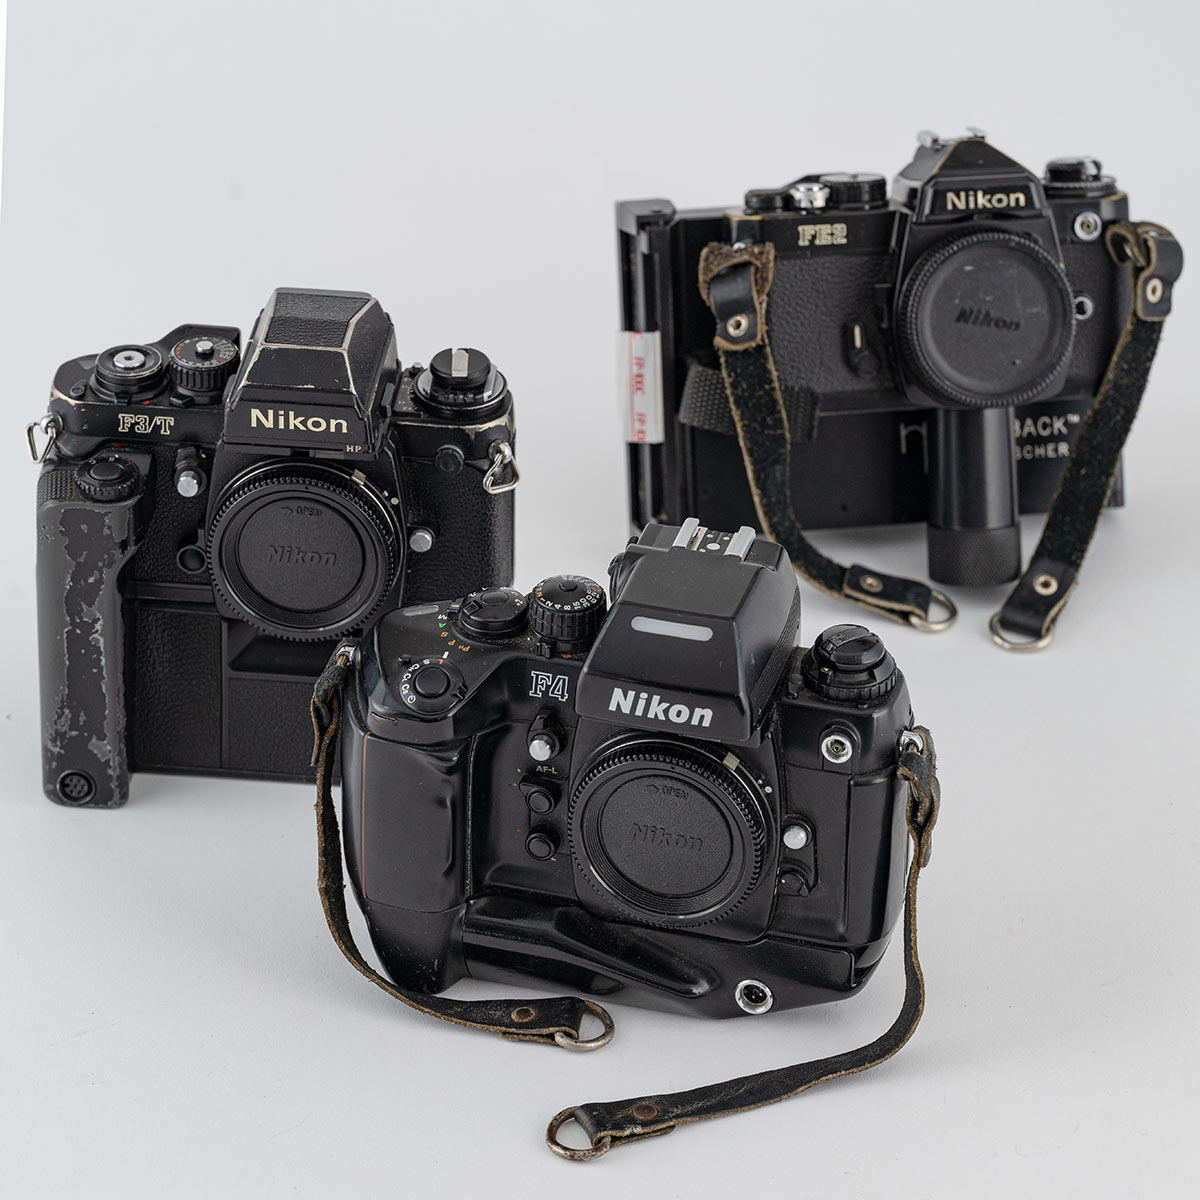 海外取材で使っていたカメラ。いずれもNikonで、「F3／T」「F4」「FE２ポラパック仕様」など。